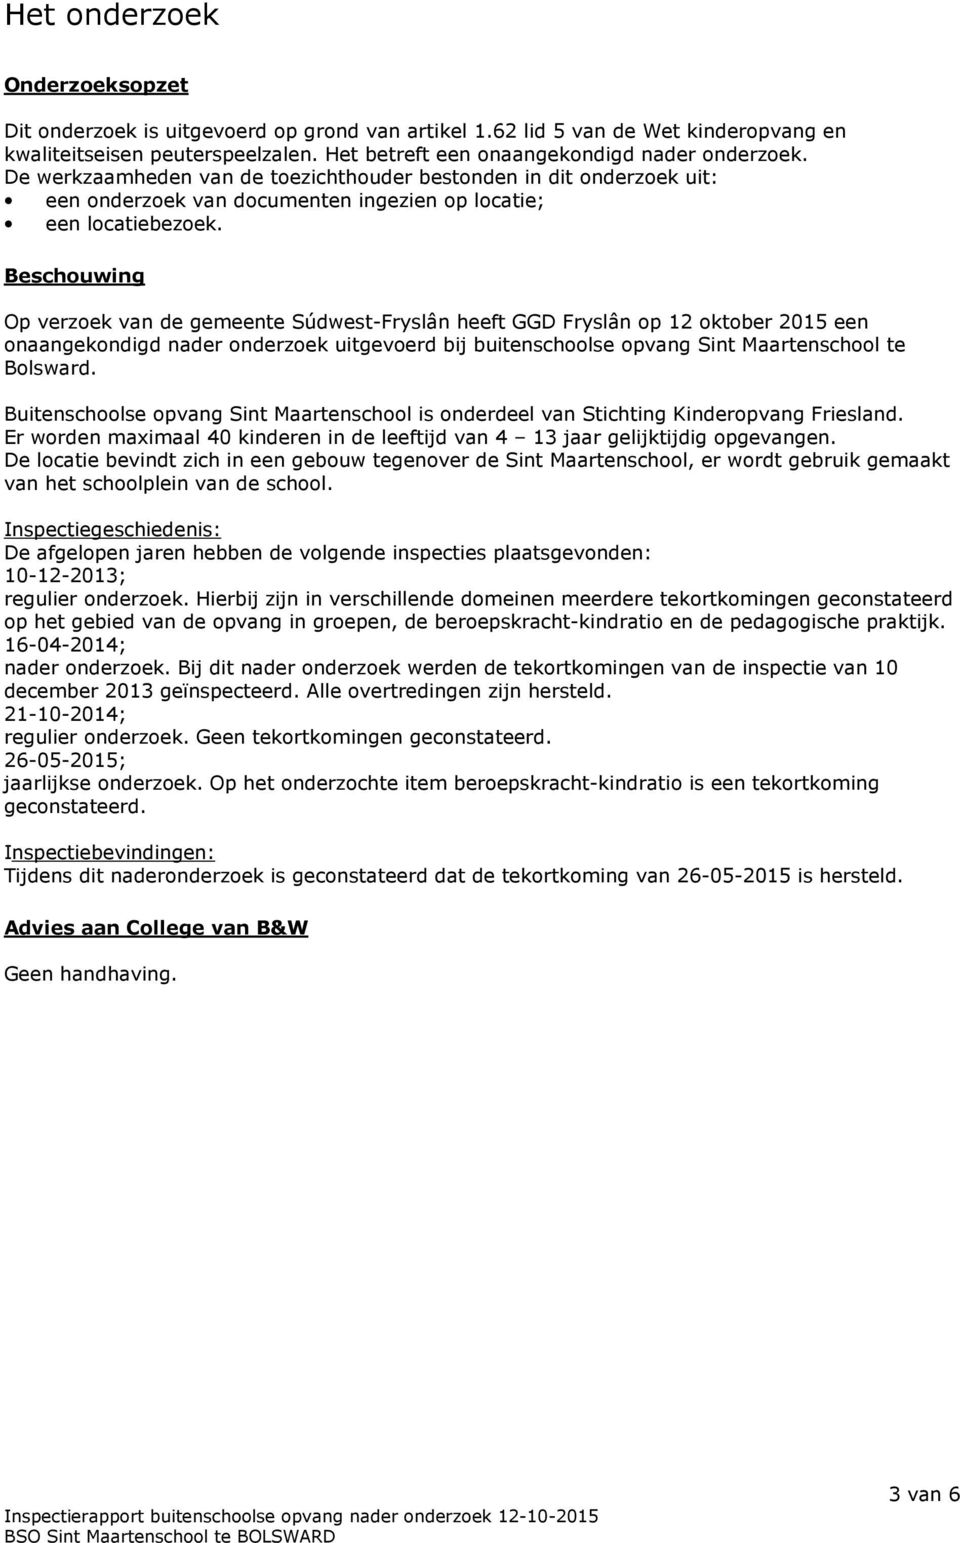 Beschouwing Op verzoek van de gemeente Súdwest-Fryslân heeft GGD Fryslân op 12 oktober 2015 een onaangekondigd nader onderzoek uitgevoerd bij buitenschoolse opvang Sint Maartenschool te Bolsward.